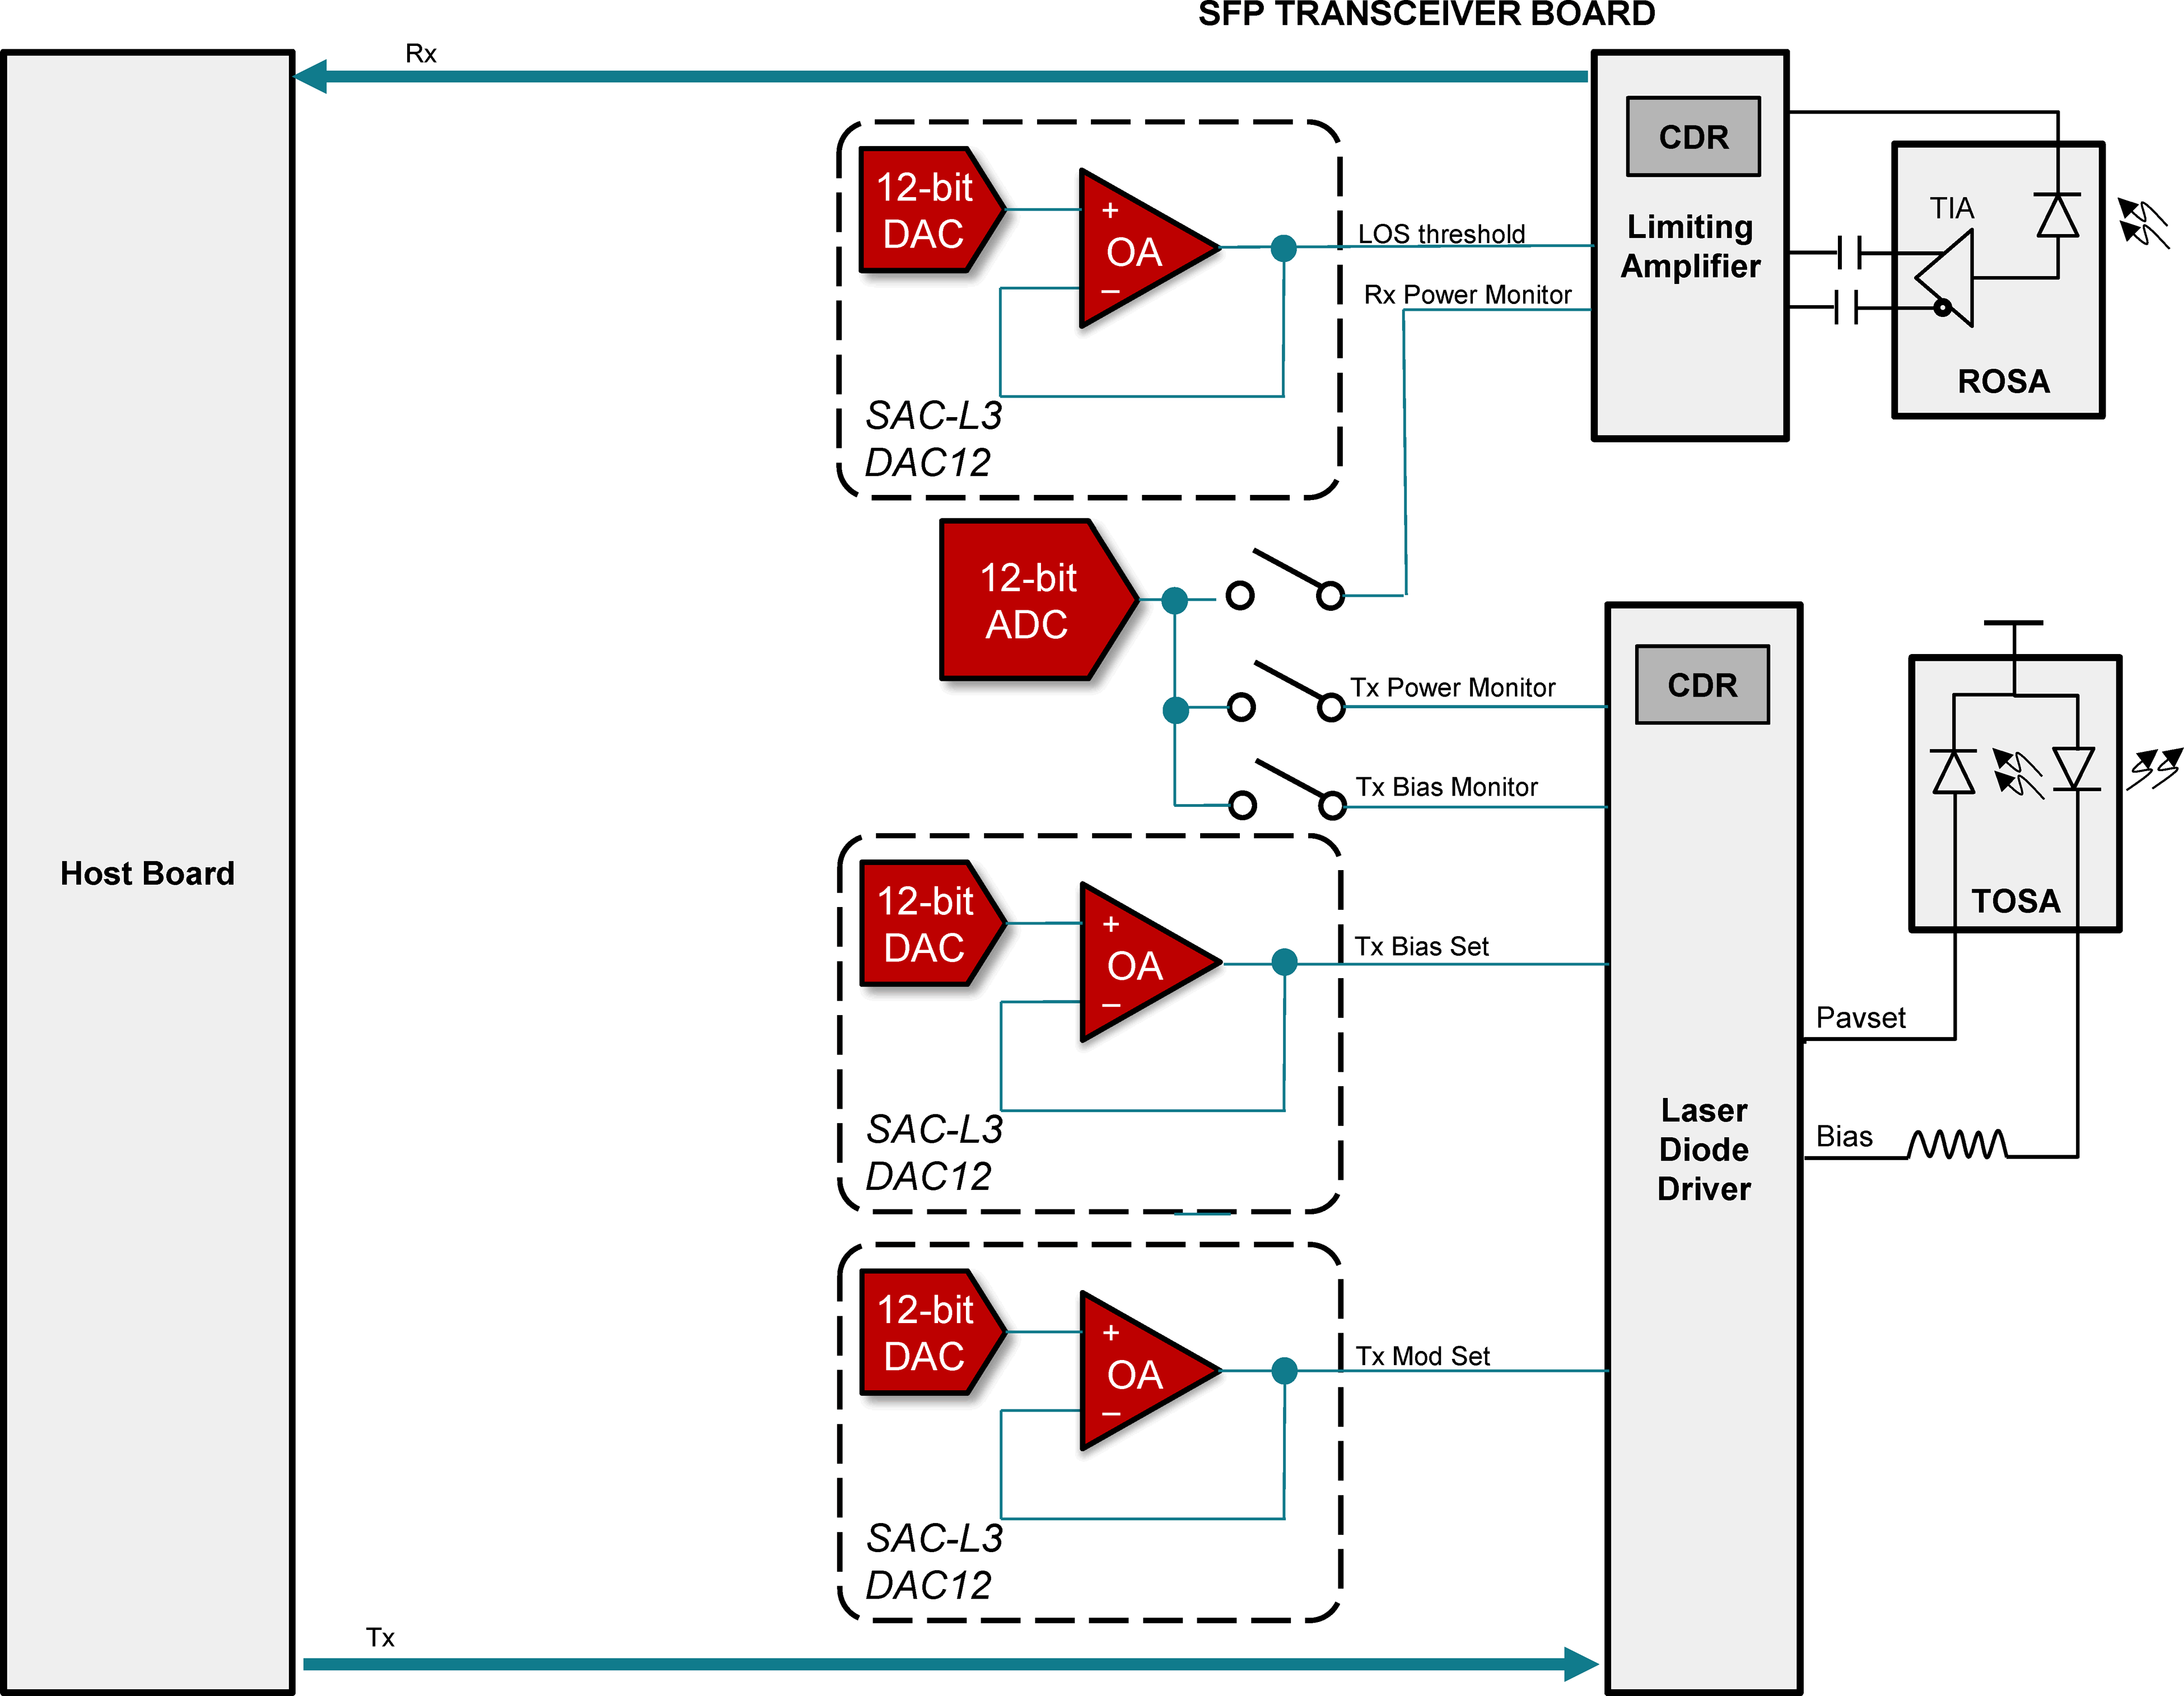 block-diagram-sfp-transceiver-board.png